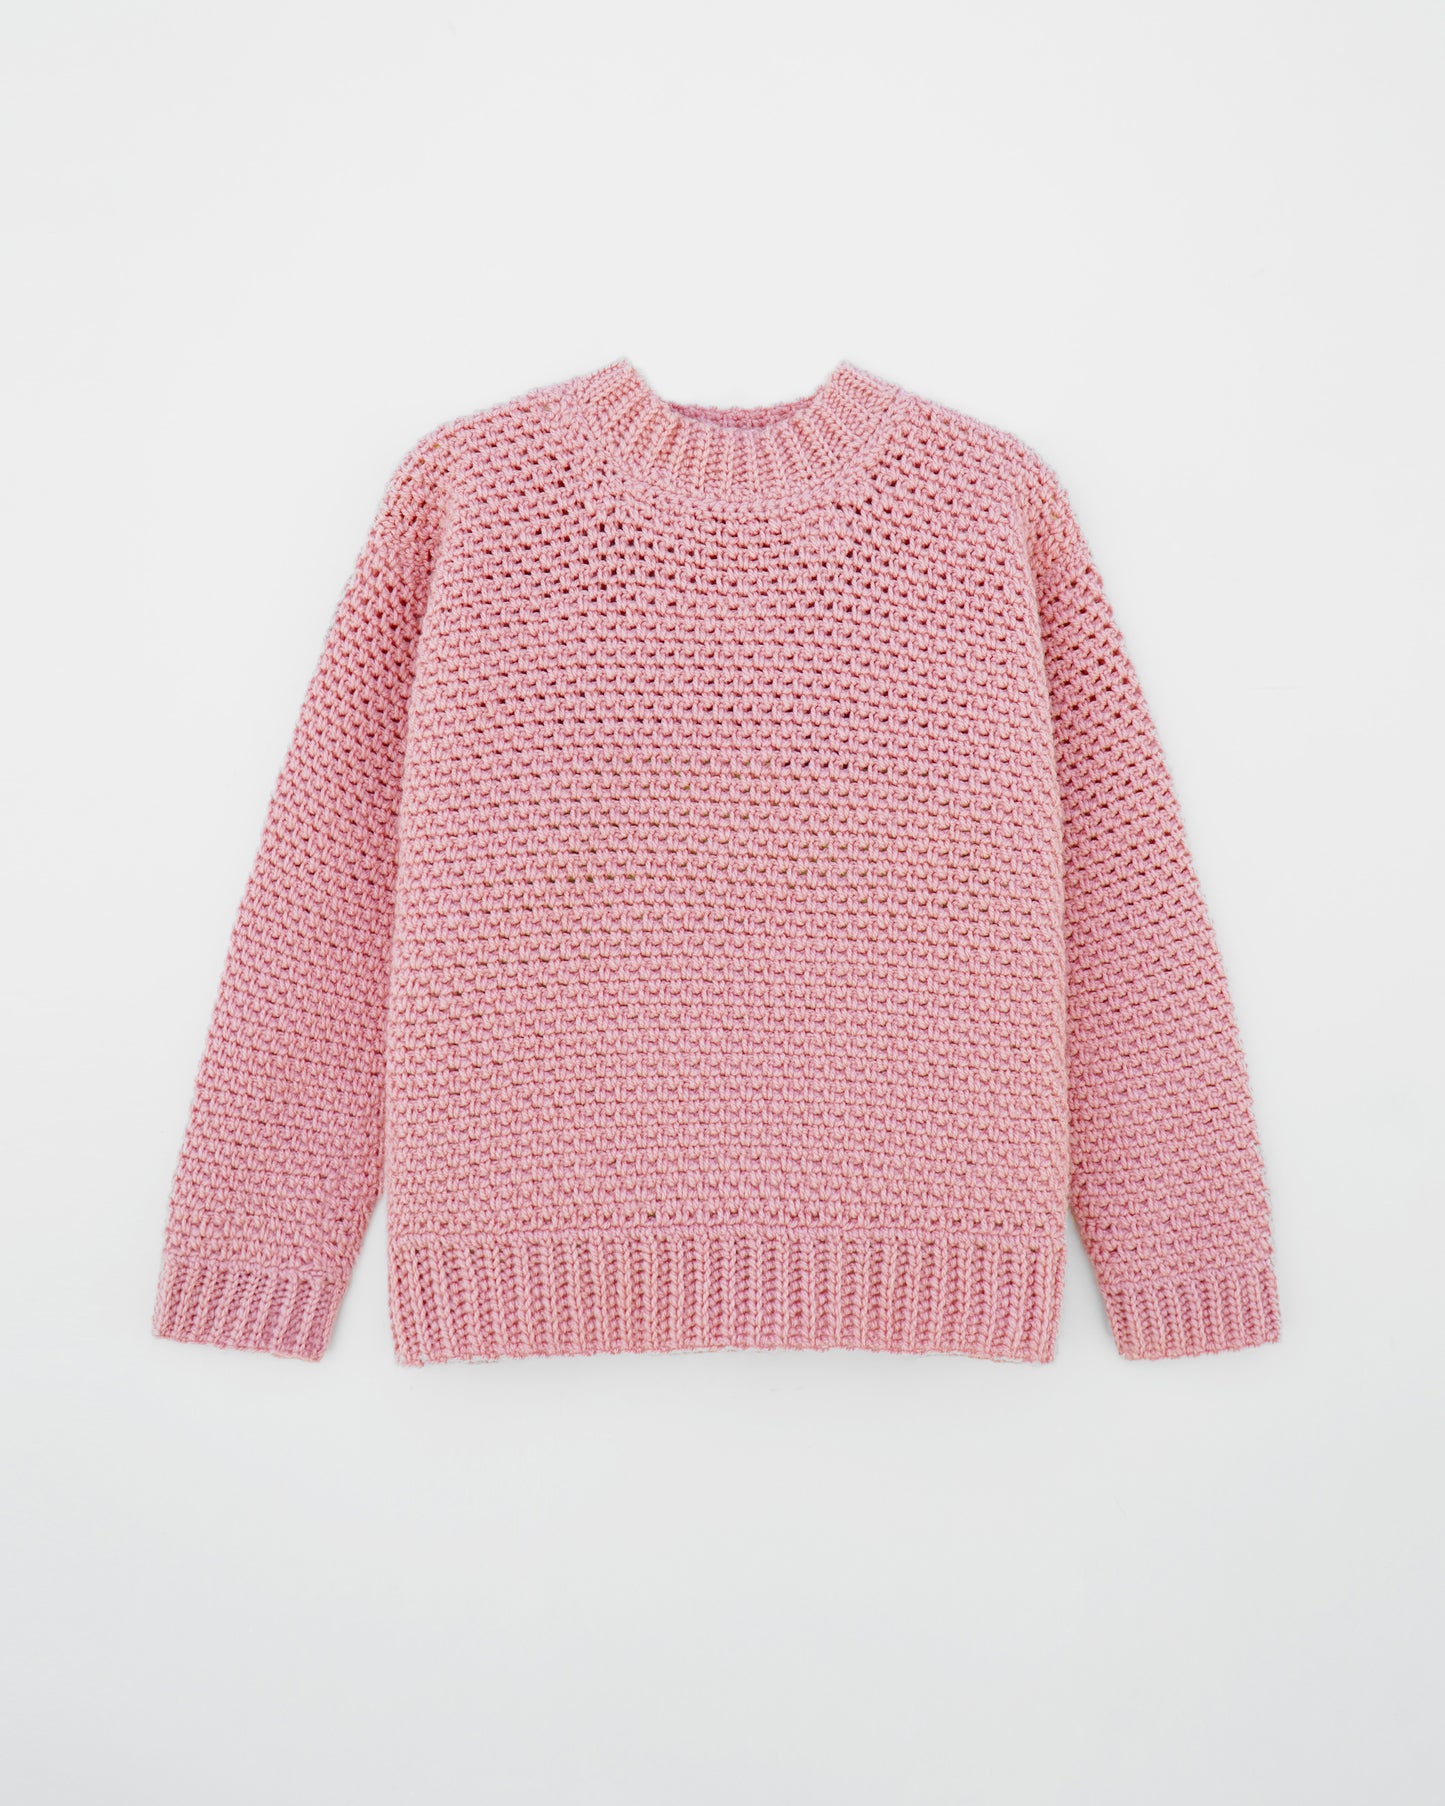 Sweater No.30 | Easy crochet pattern